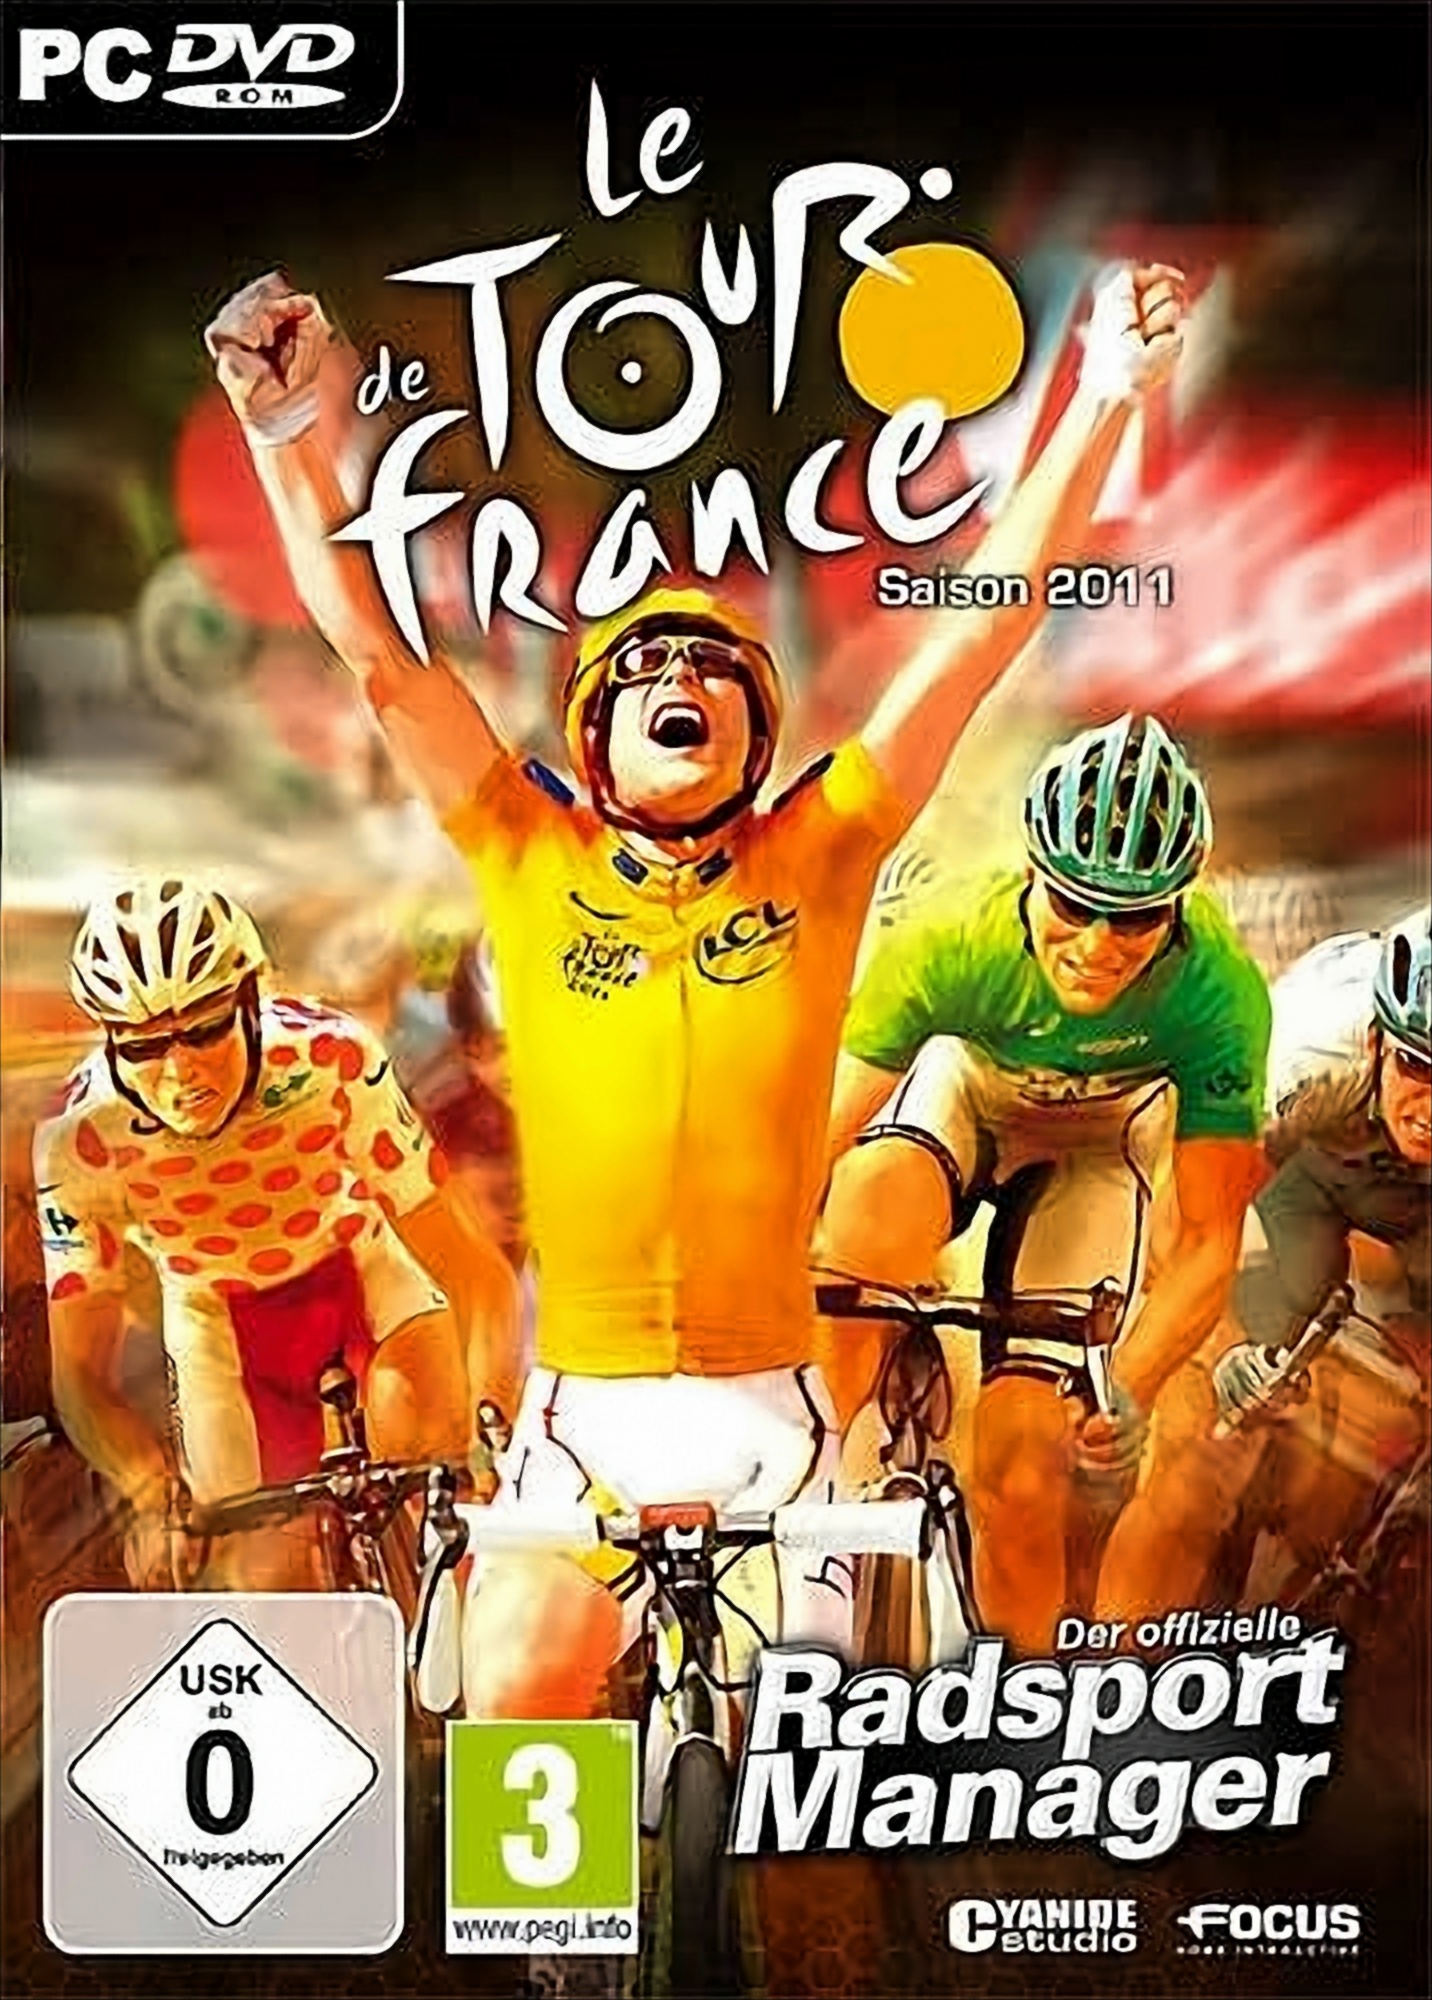 Le Tour de France 2011 - Der offizielle Radsport Manager von dtp